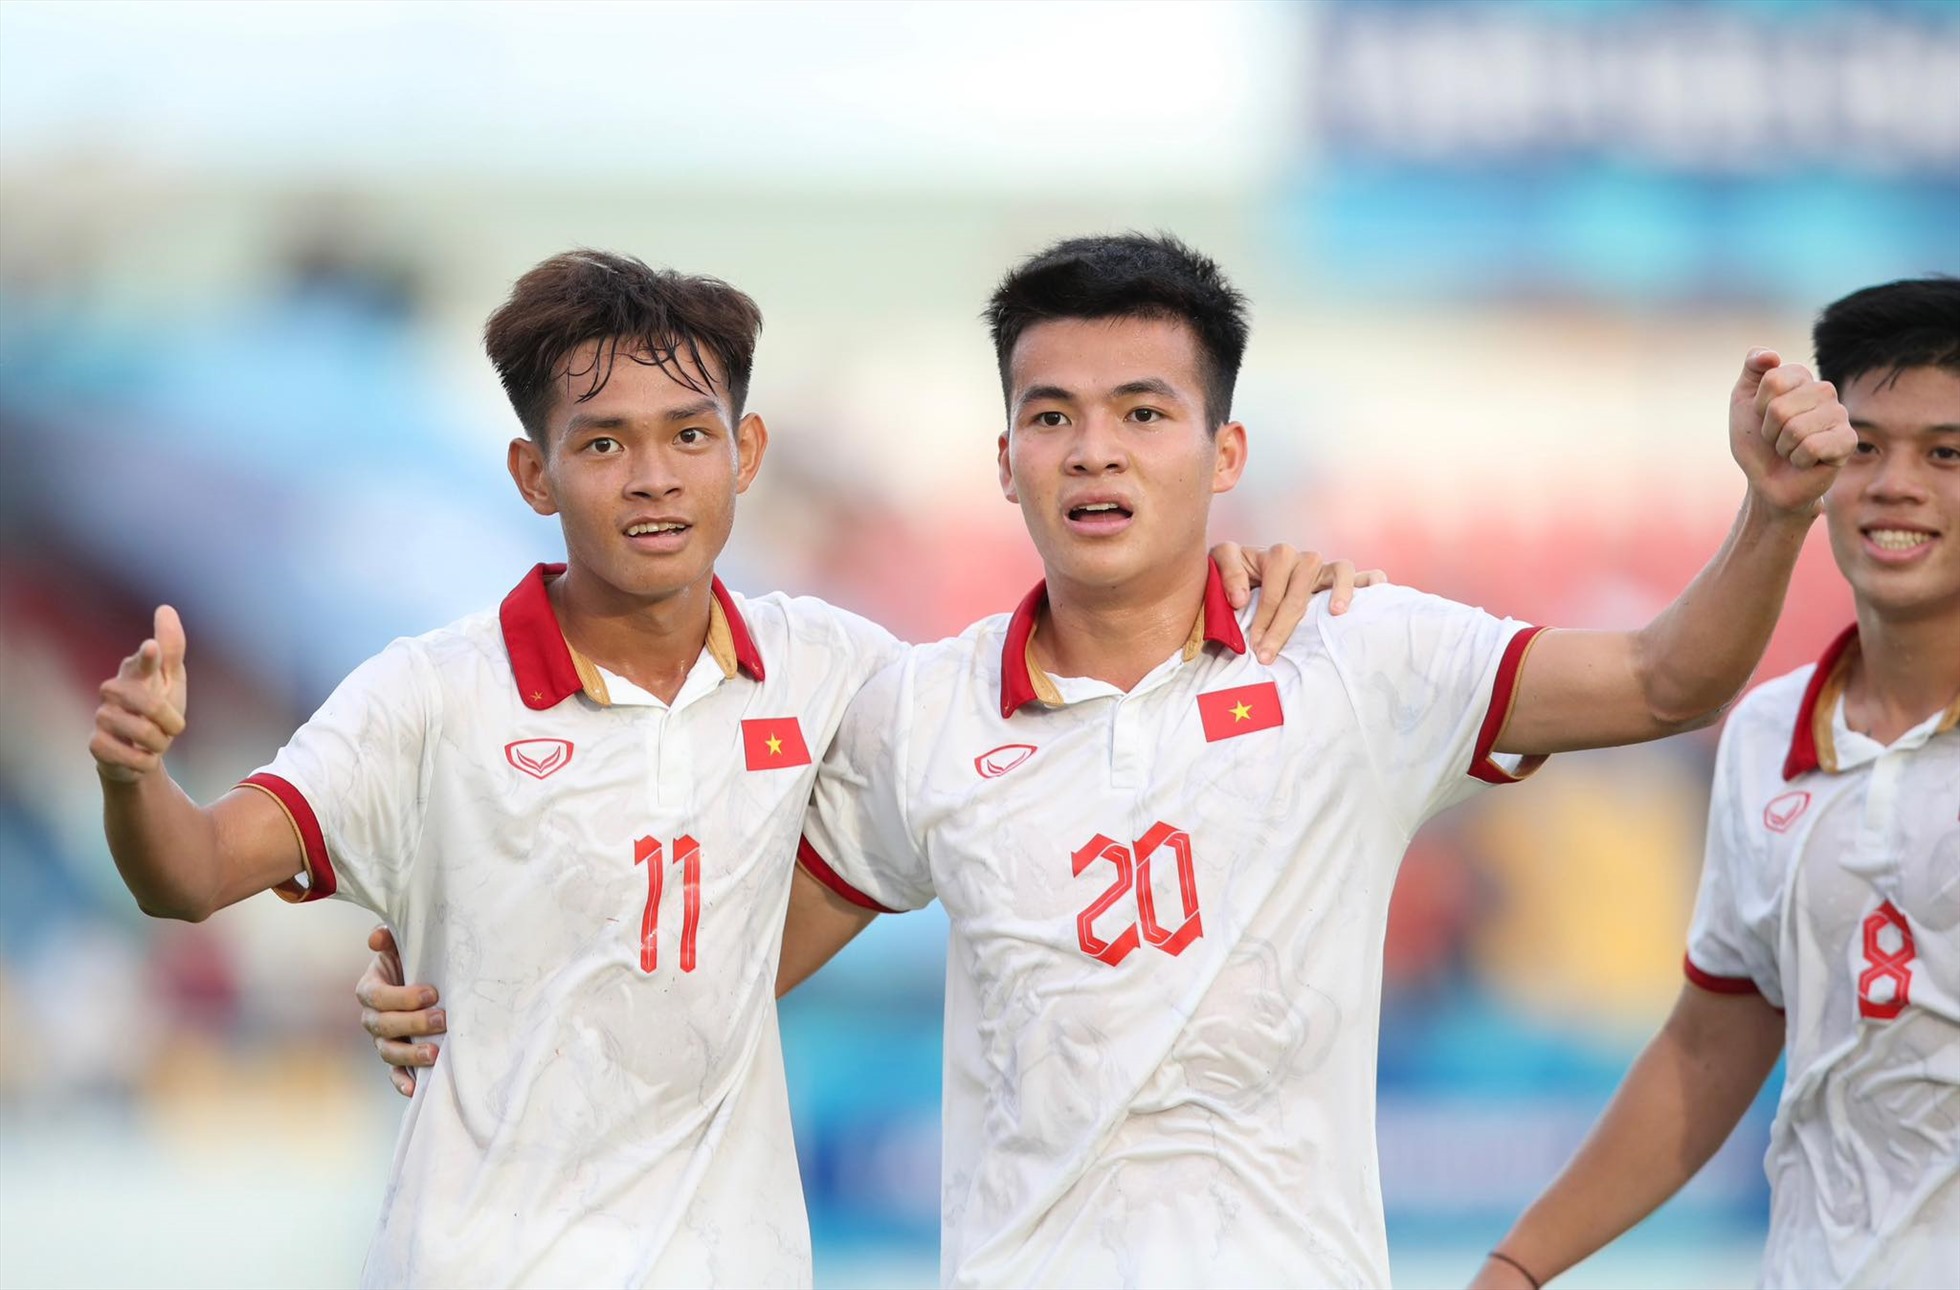 Nguyễn Hồng Phúc (20) ghi bàn ấn định chiến thắng 4-1 cho U23 Việt Nam ở bán kết. Ảnh: Lâm Thoả